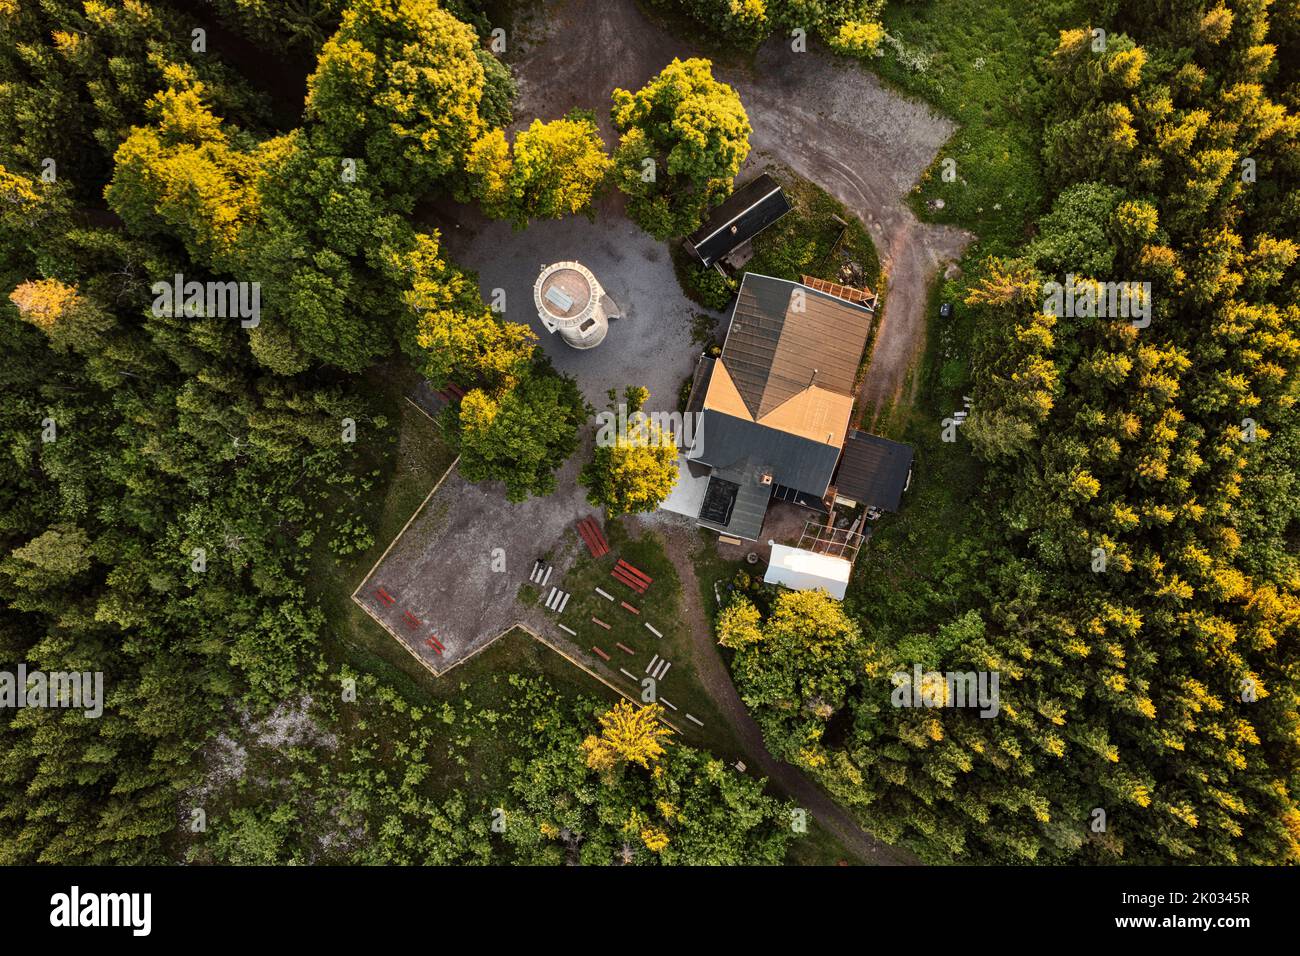 Alemania, Turingia, Ilmenau, Kickelhahn, torre de observación, posada, lugar de descanso, bosque, vista superior, foto aérea Foto de stock